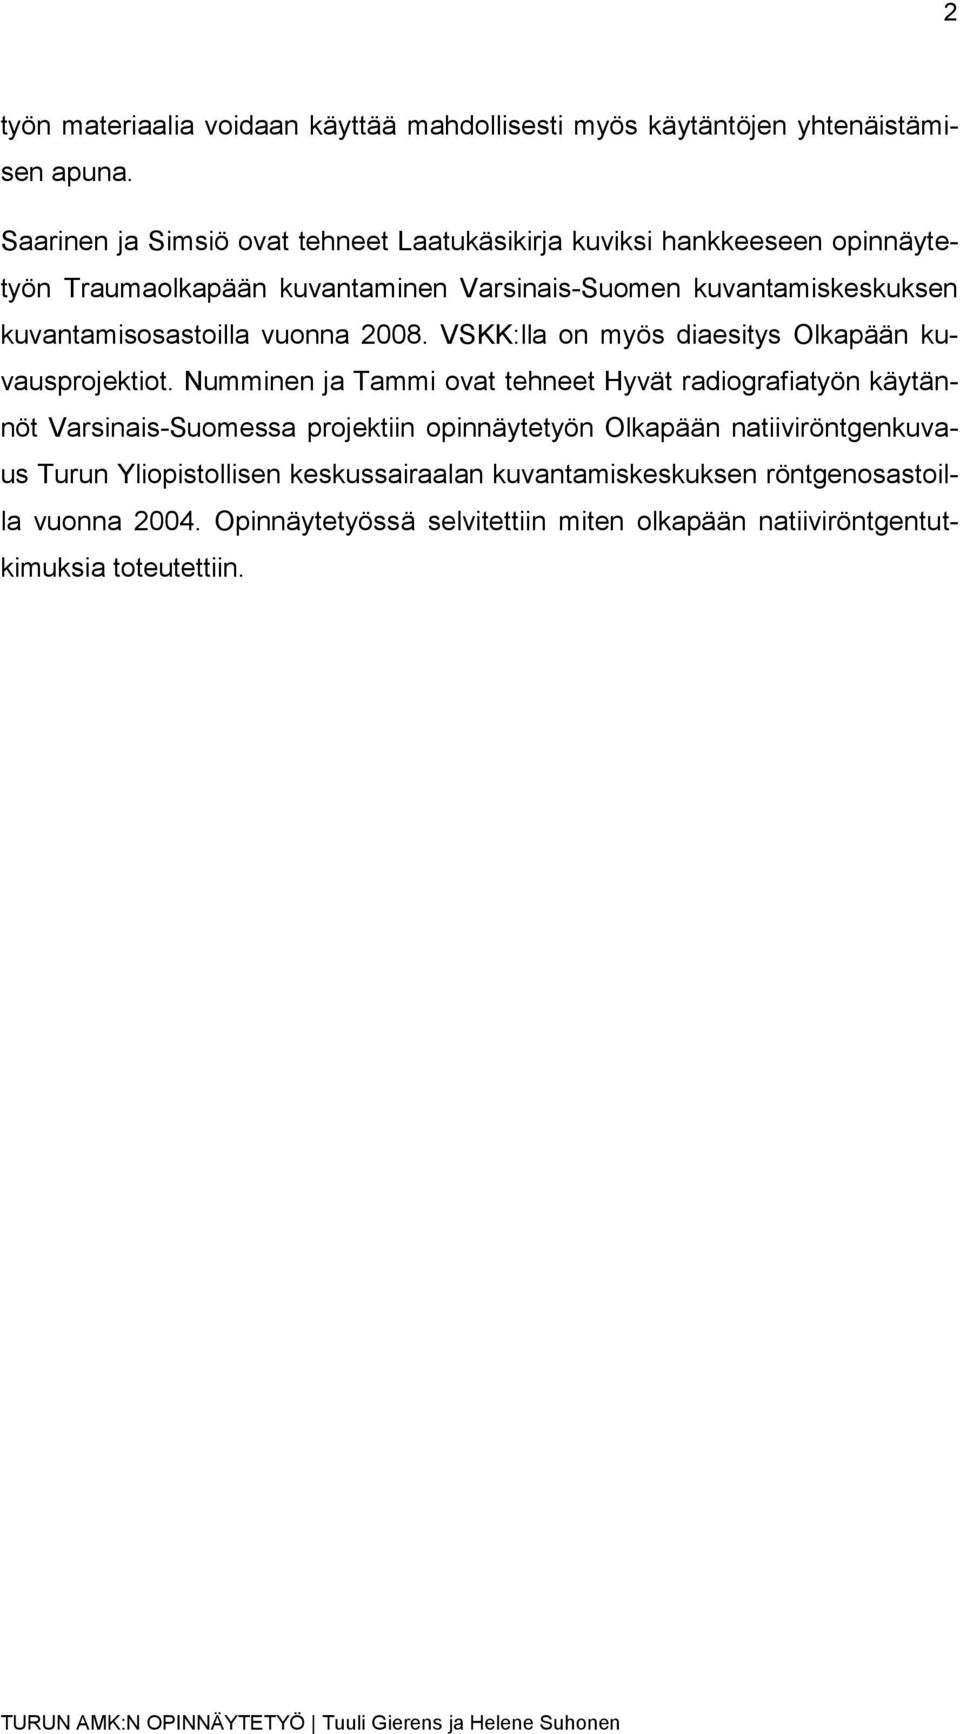 kuvantamisosastoilla vuonna 2008. VSKK:lla on myös diaesitys Olkapään kuvausprojektiot.